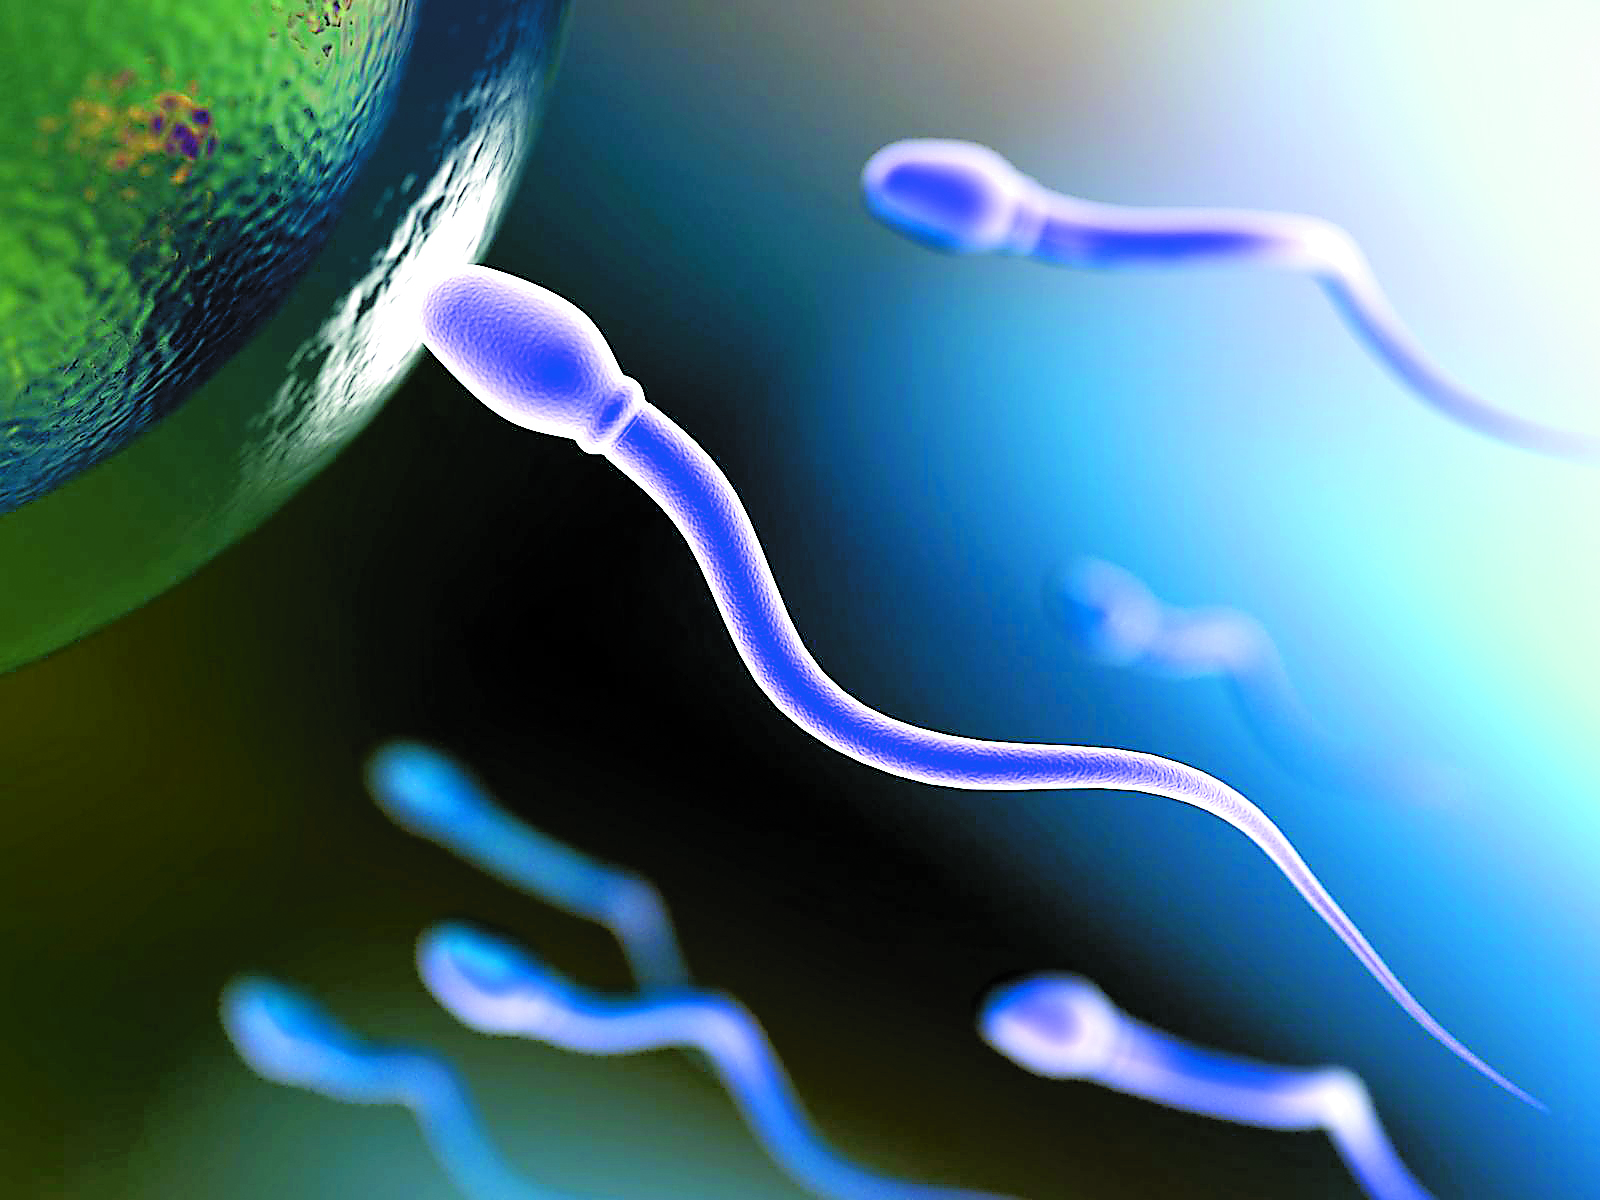 Έμβρυο από το γενετικό υλικό τριών ατόμων δημιούργησαν Αμερικανοί επιστήμονες